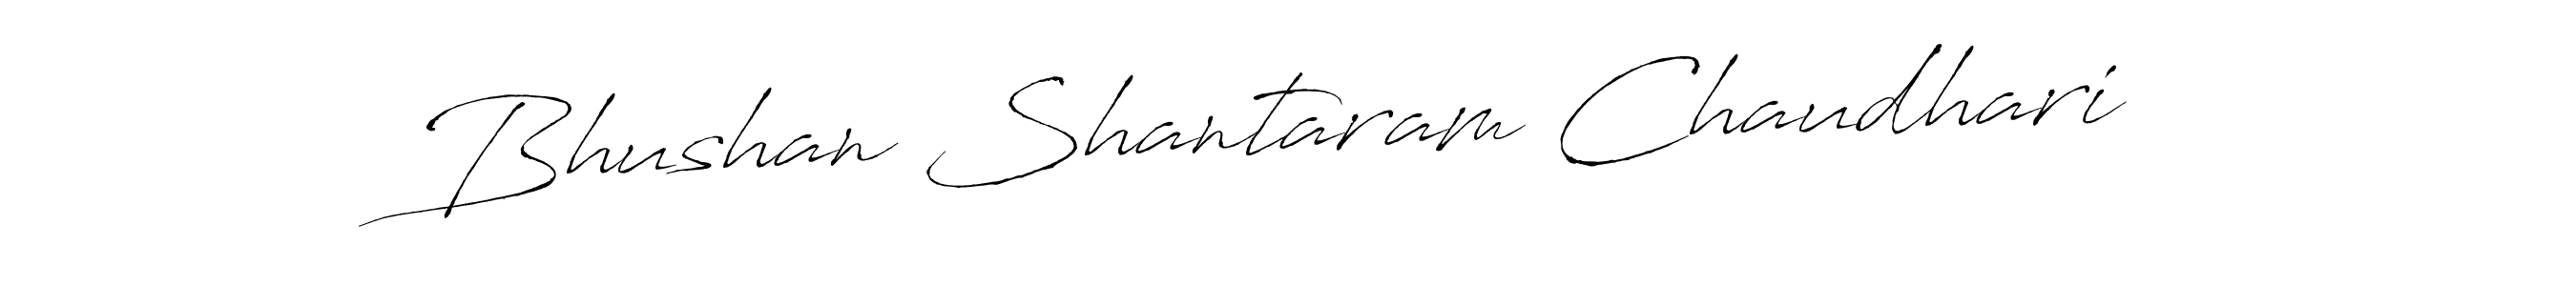 Bhushan Shantaram Chaudhari stylish signature style. Best Handwritten Sign (Antro_Vectra) for my name. Handwritten Signature Collection Ideas for my name Bhushan Shantaram Chaudhari. Bhushan Shantaram Chaudhari signature style 6 images and pictures png